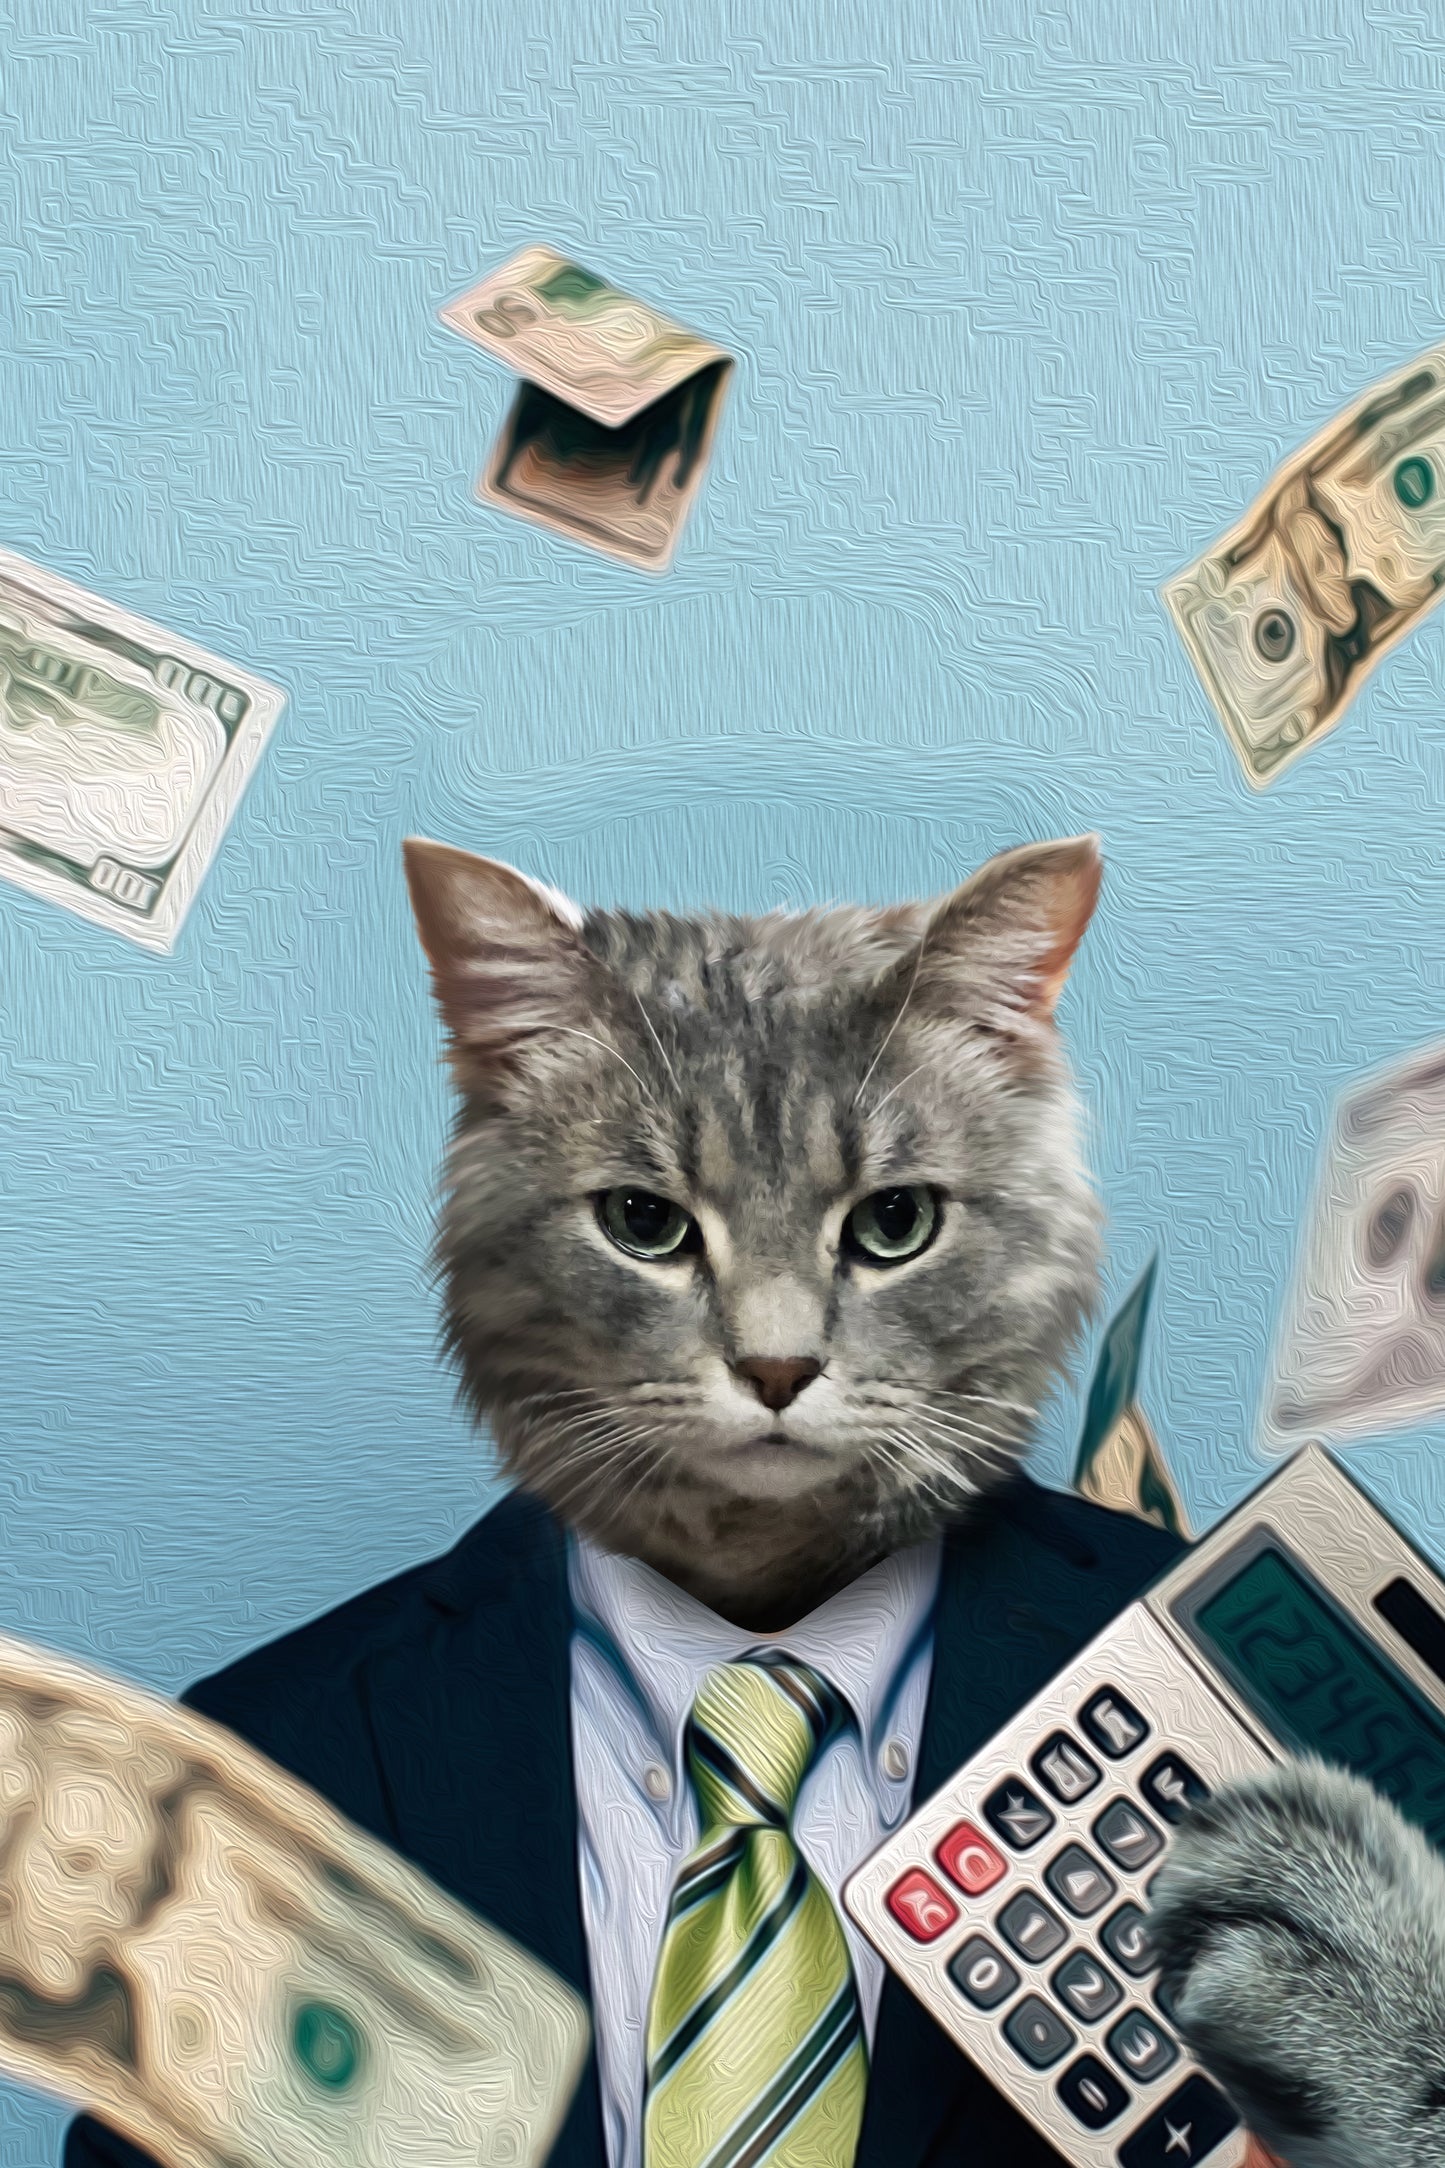 The Accountant Custom Pet Portrait Canvas - Noble Pawtrait